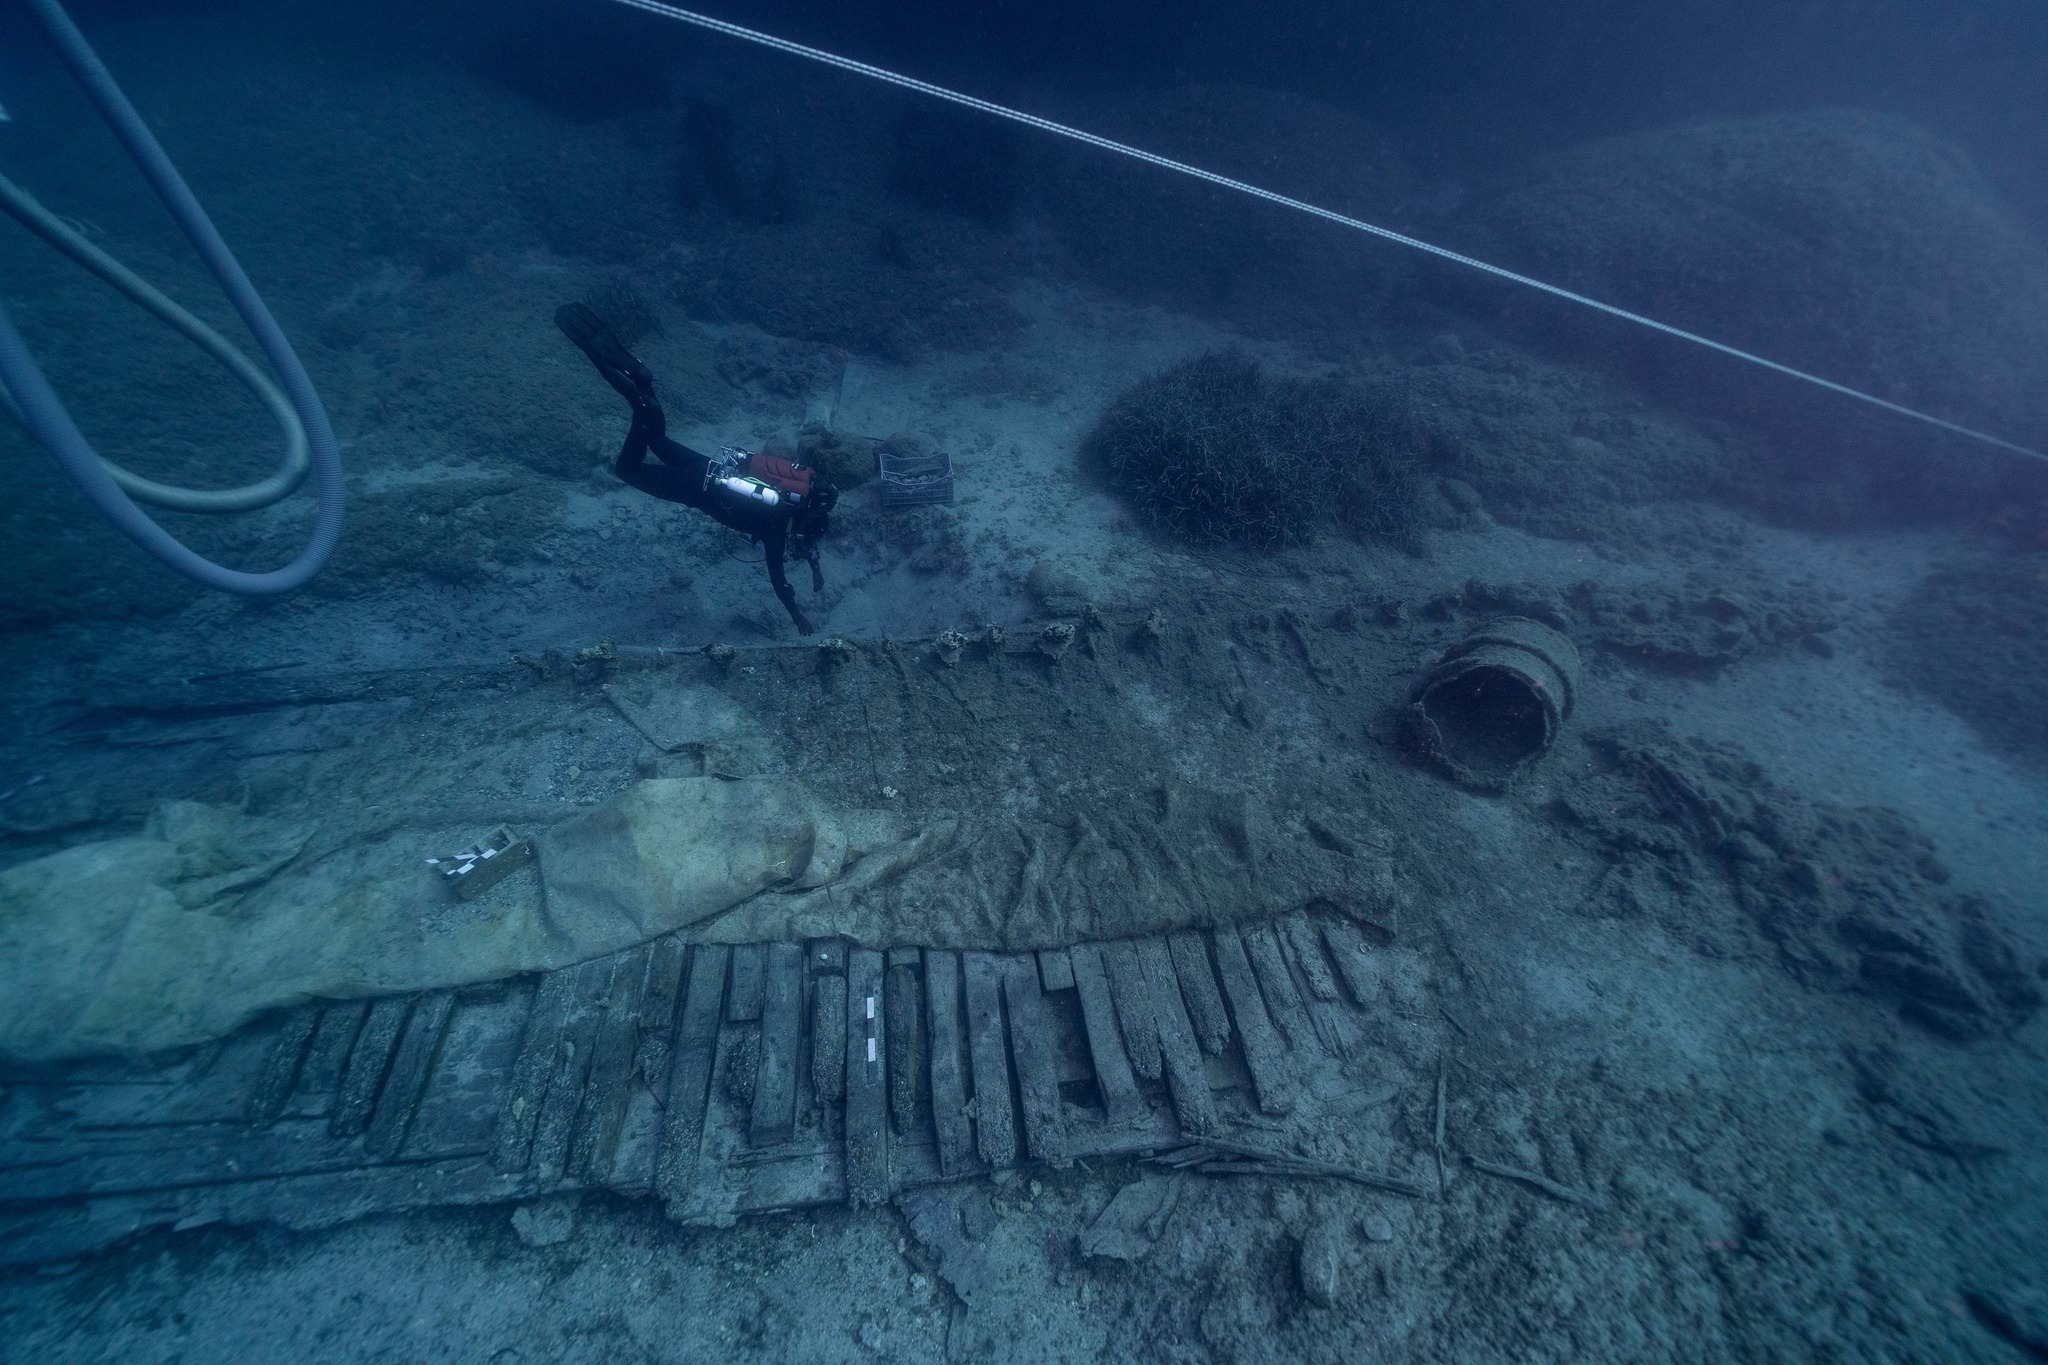 Κύθηρα: Δείτε τι αποκάλυψε η υποβρύχια έρευνα στο ιστορικό ναυάγιο «ΜΕΝΤΩΡ»